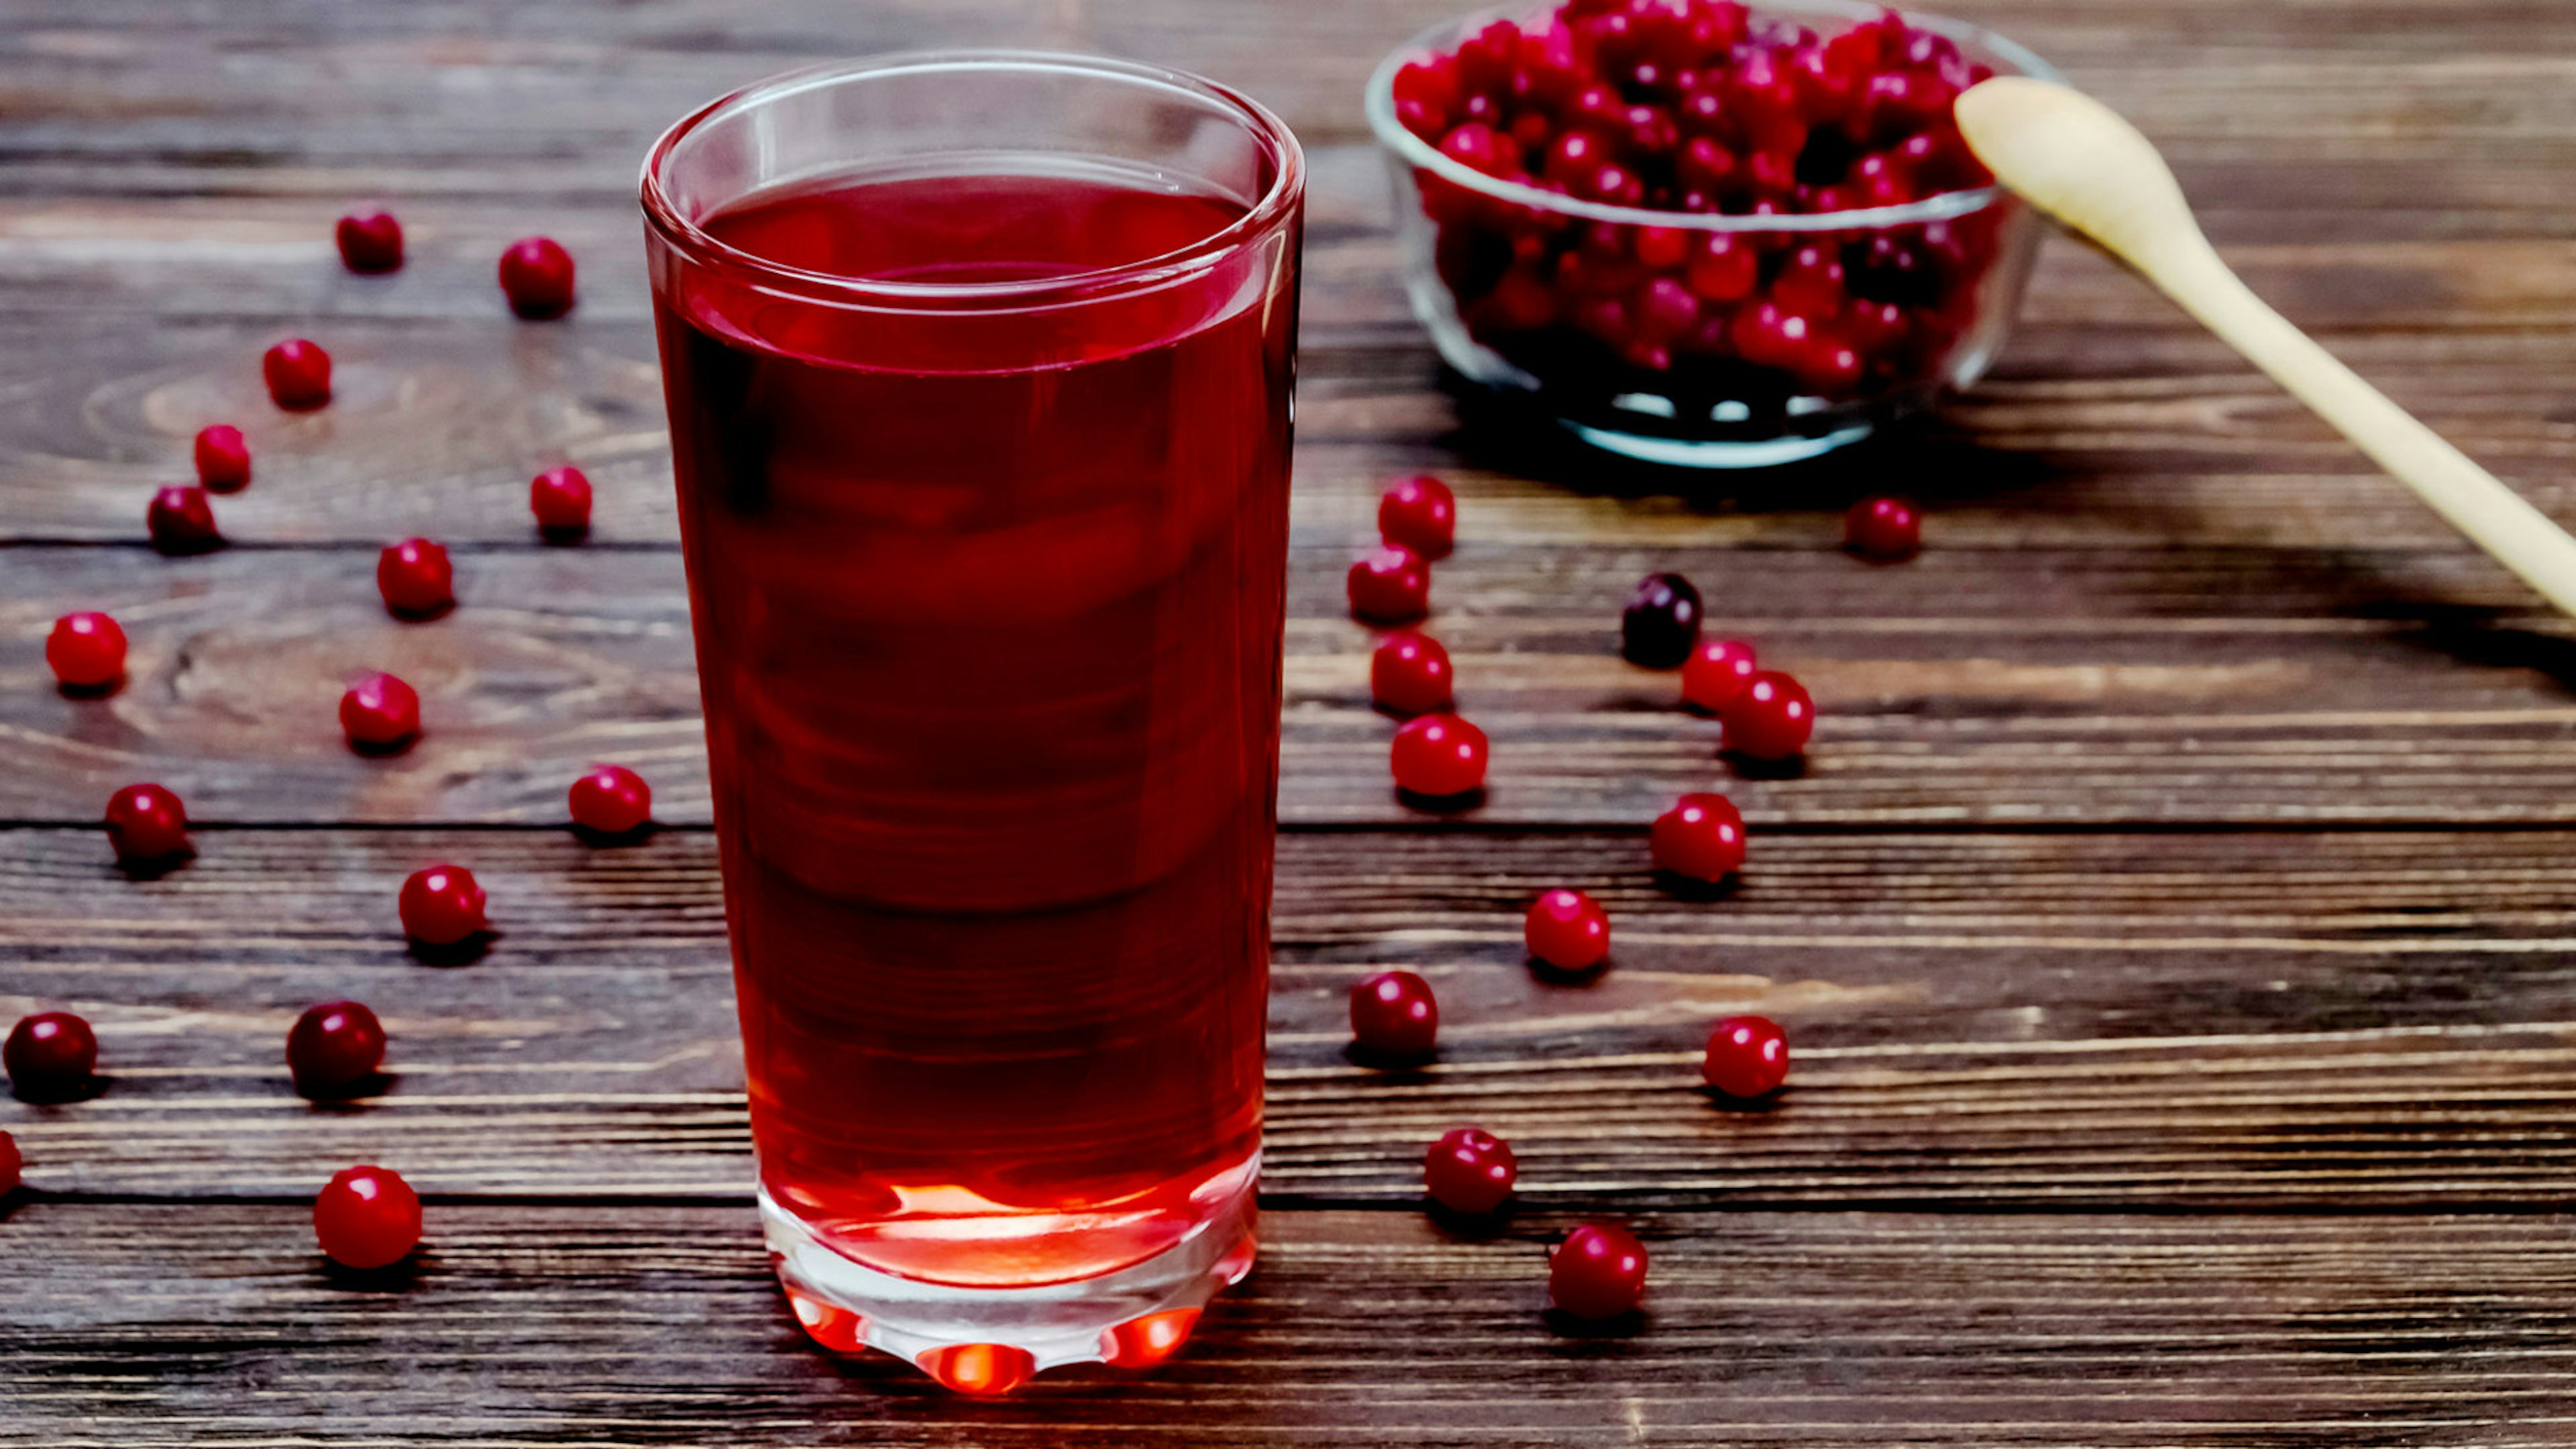 Ein volles Glas Cranberrysaft steht auf dem Tisch vor herumliegenden Beeren und einer Schüssel voll mit Cranberries